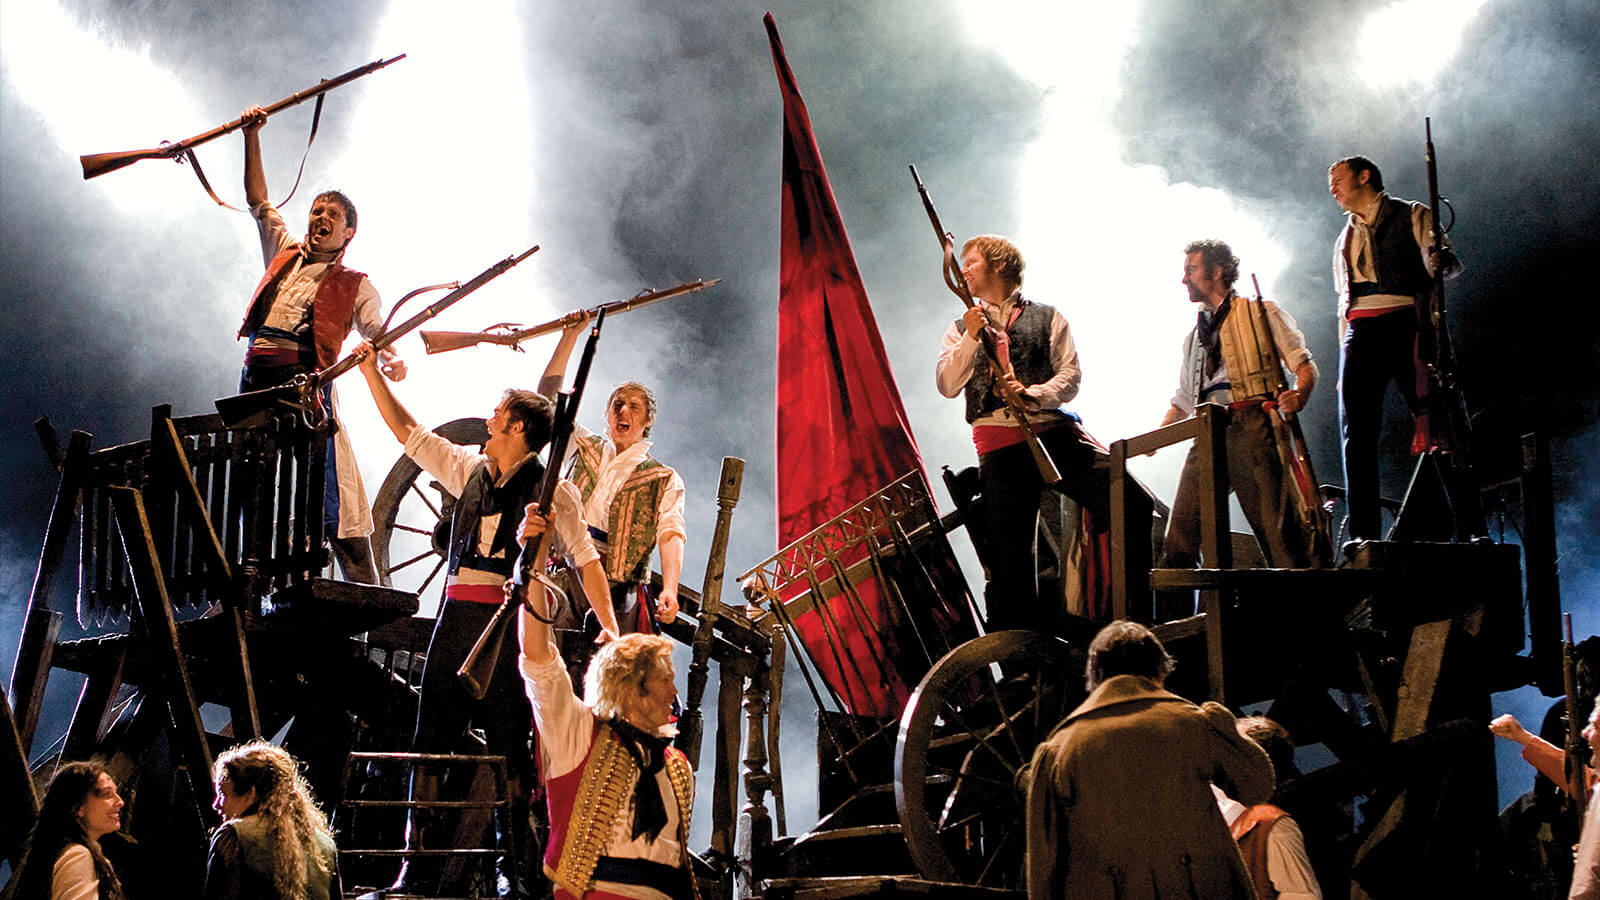 The Ultimate Les Misérables All Stars: OT's Dream Cast